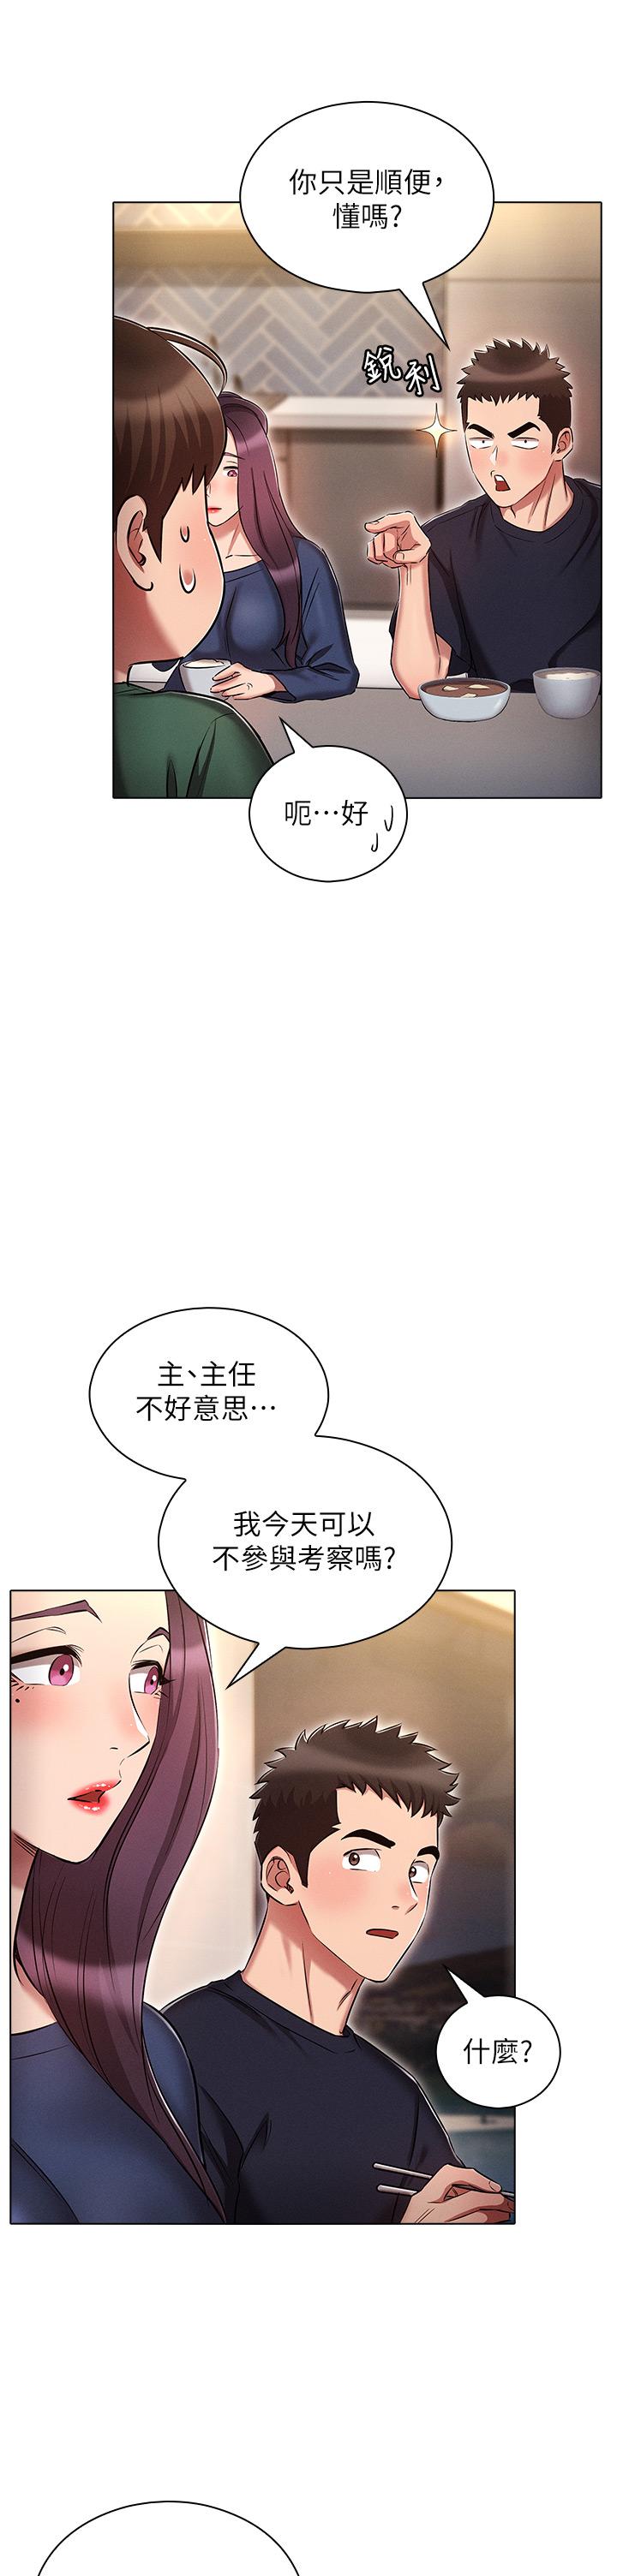 韩国污漫画 魯蛇的多重宇宙 第21话-变态通话指令 14